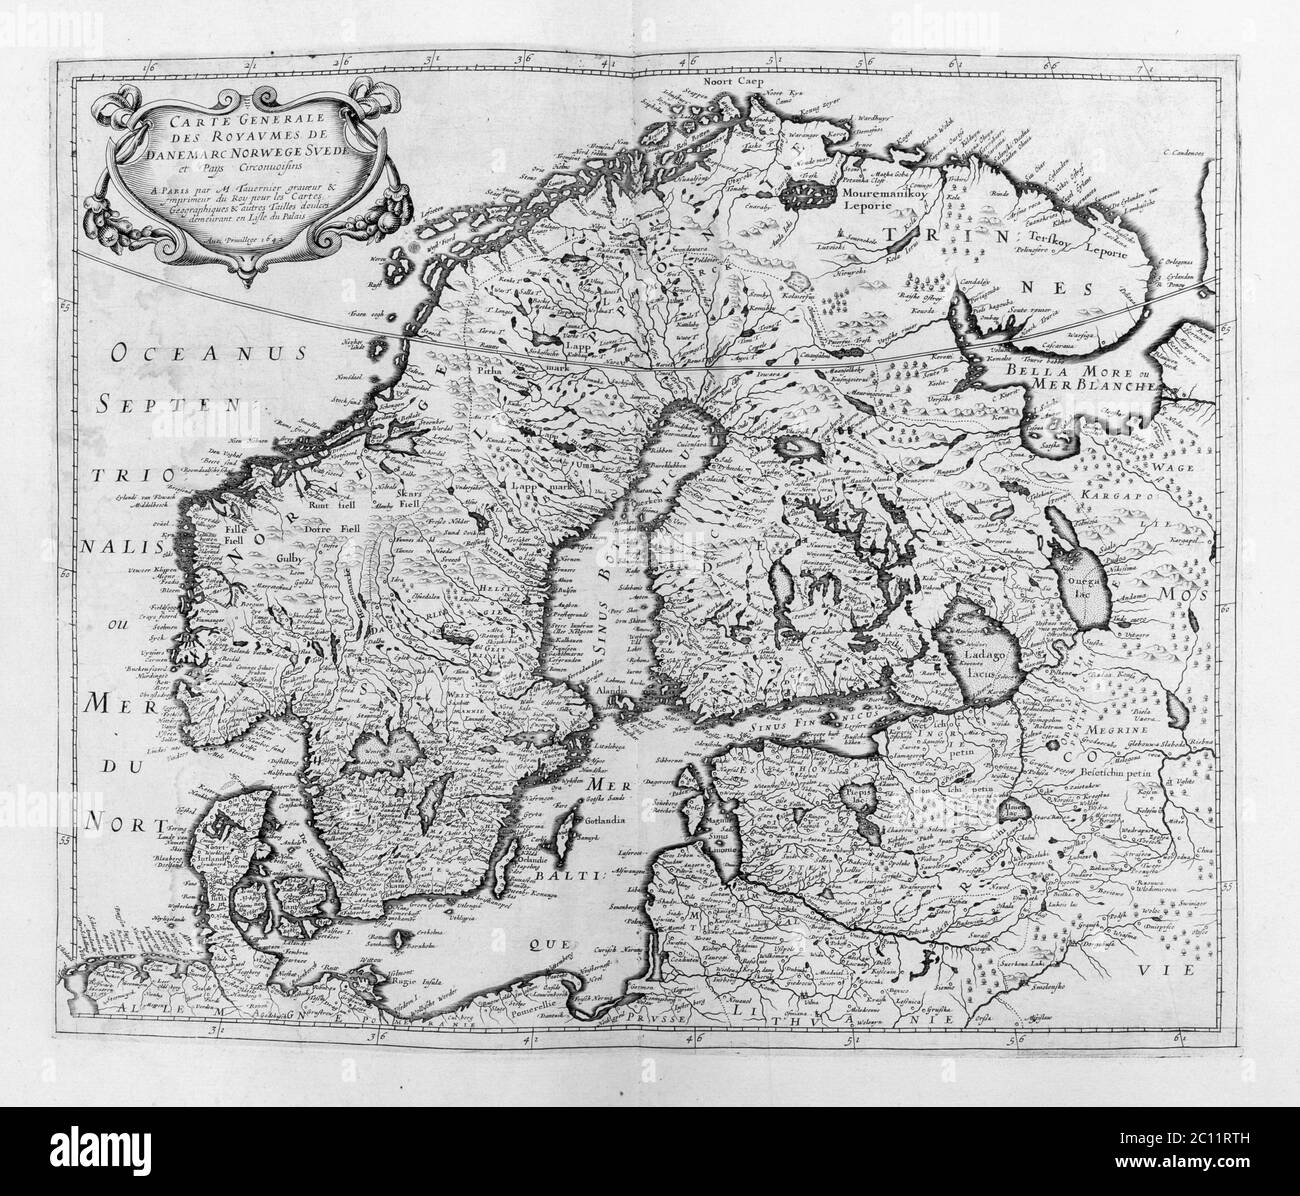 Vecchia mappa della Scandinavia e dell'Europa settentrionale - da un Atlante di Geografia del 1656 da P. du Val - Francia (Collezione privata) Foto Stock